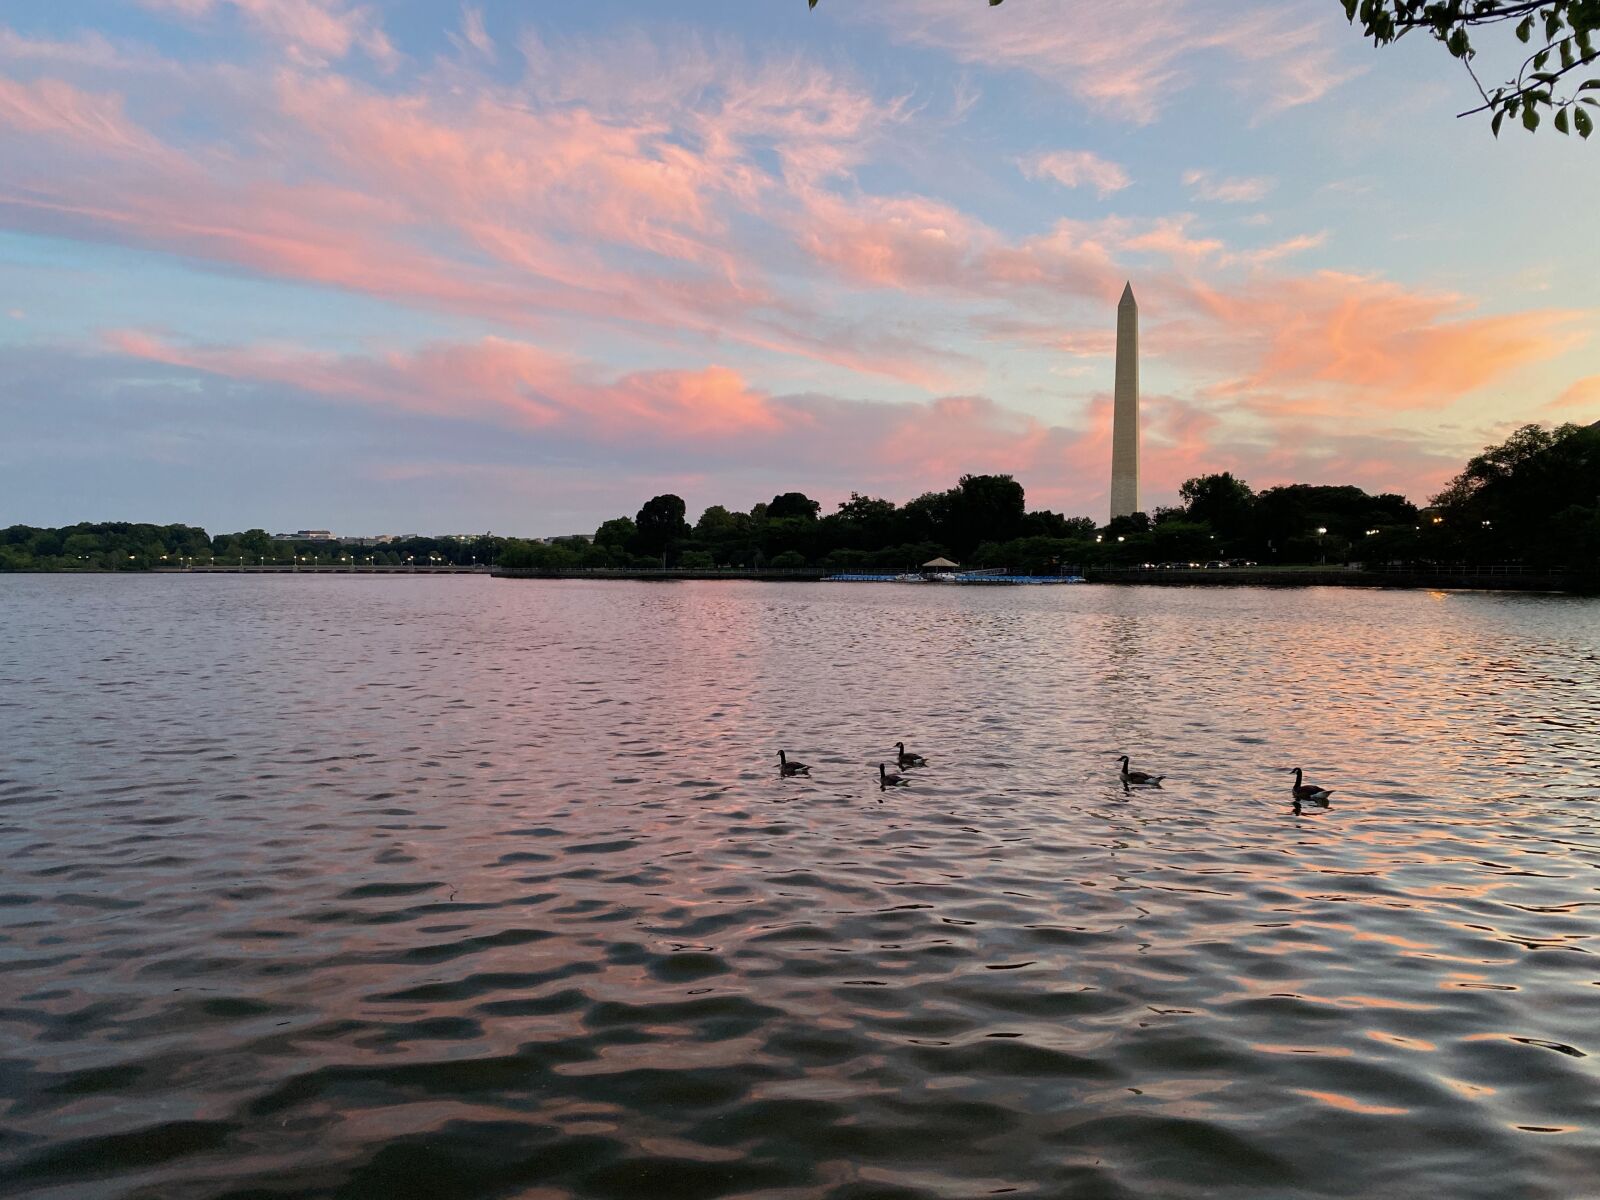 Apple iPhone 11 Pro sample photo. Washington, monument, sunrise photography